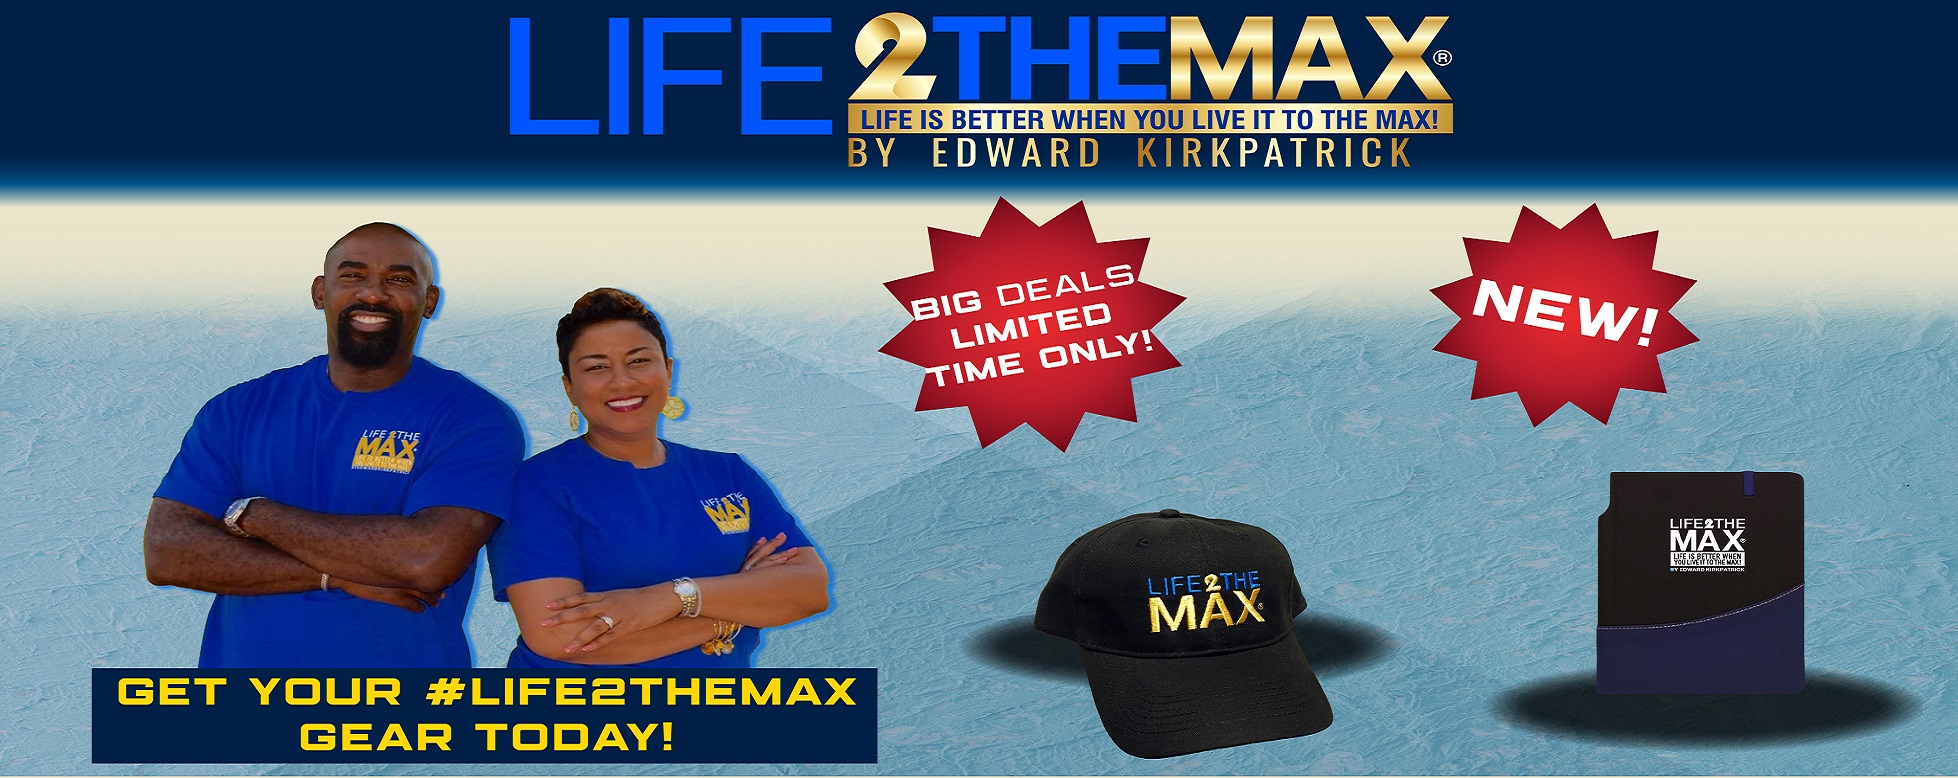 life2themax merchandise